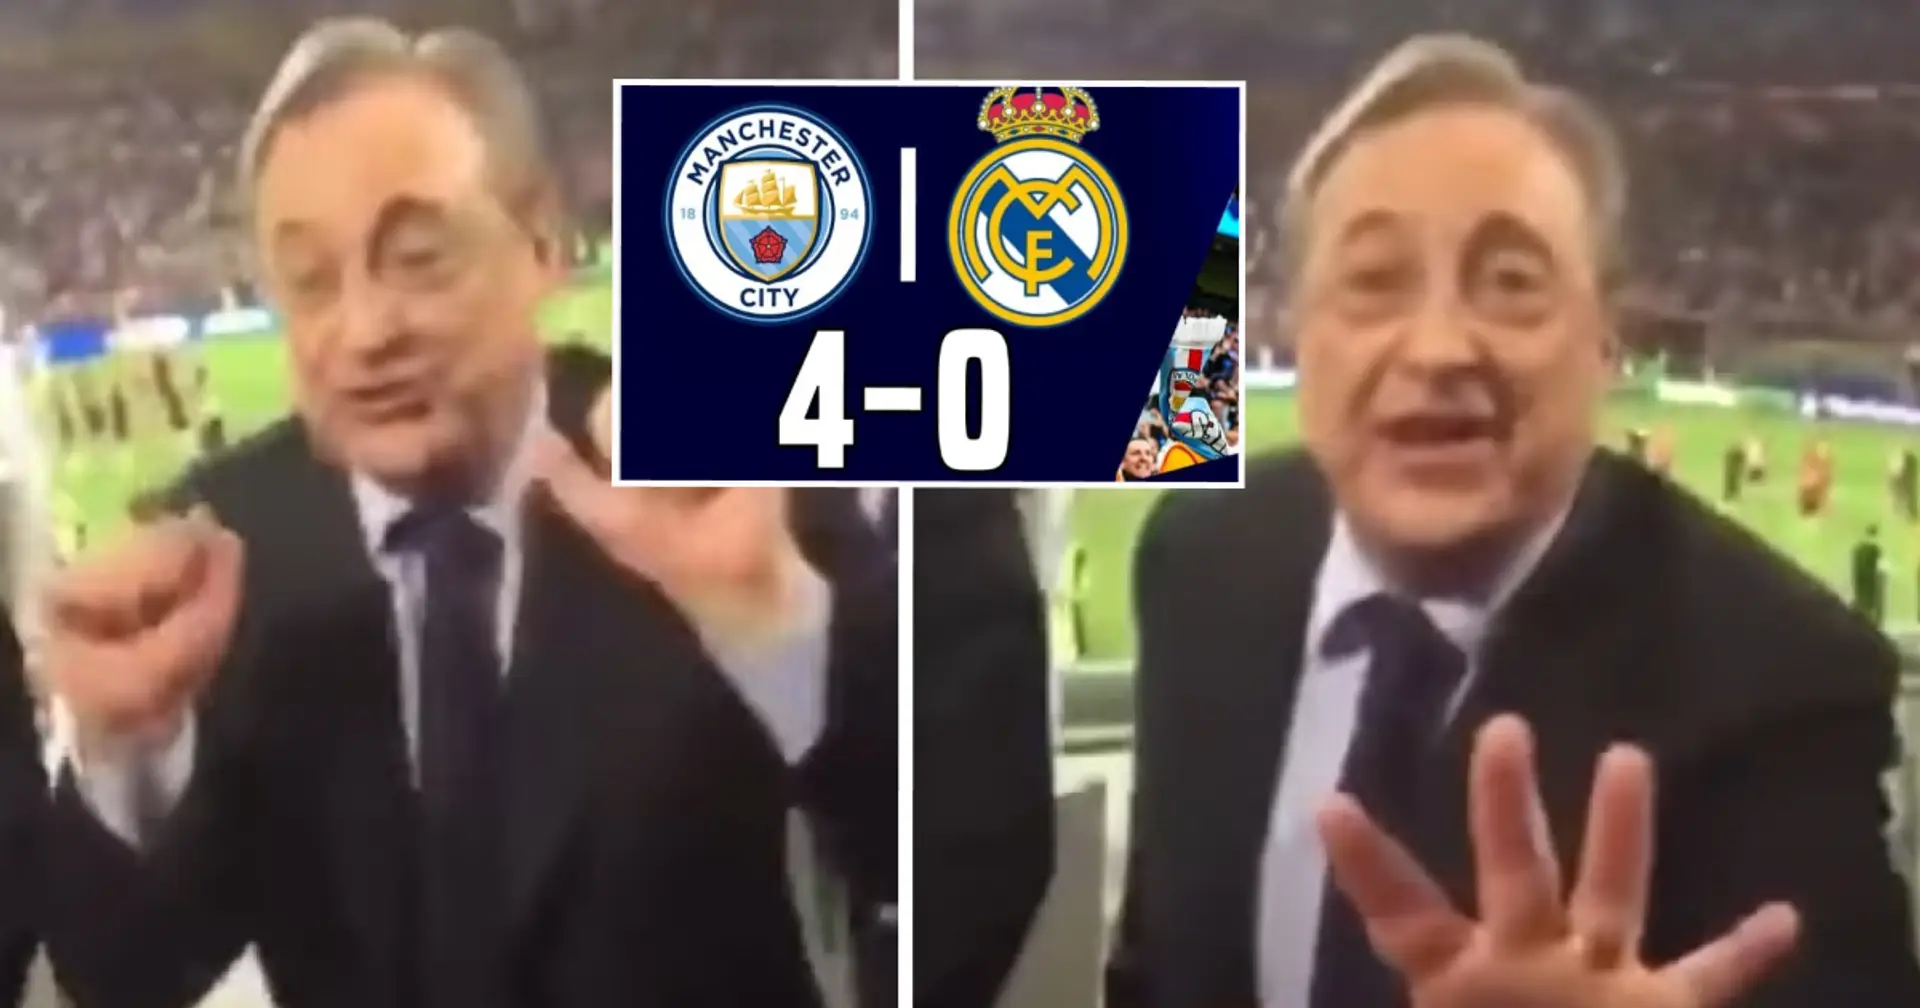 Revelada la reacción de Florentino Pérez a la dura derrota vs Manchester City